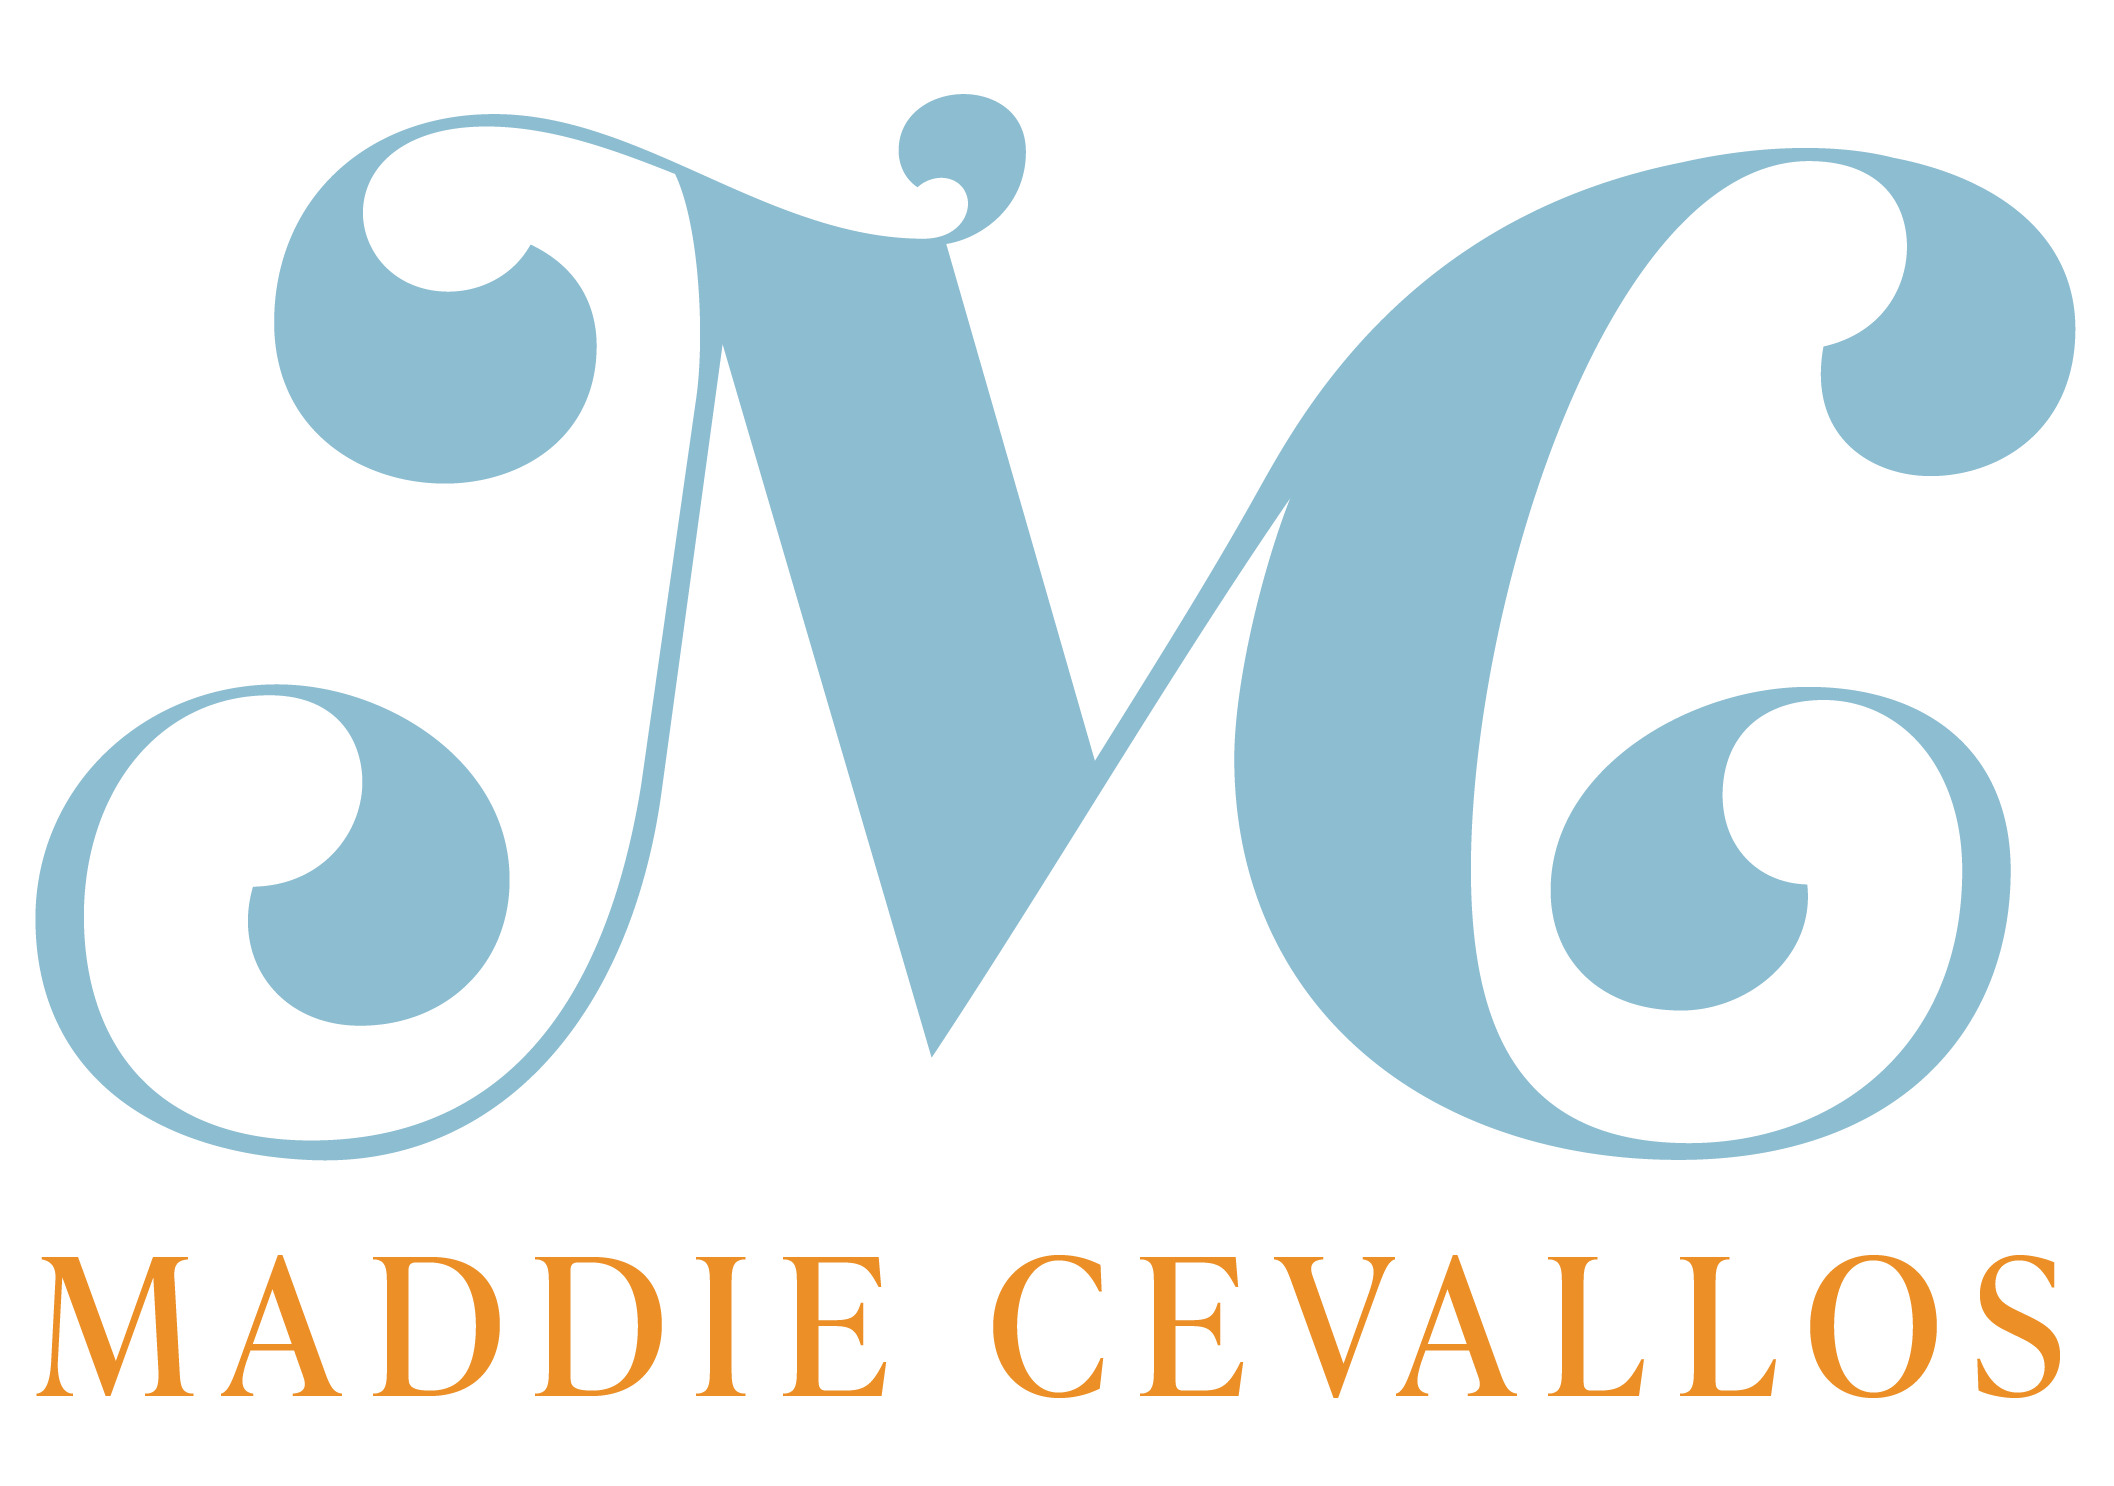 MADDIE CEVALLOS